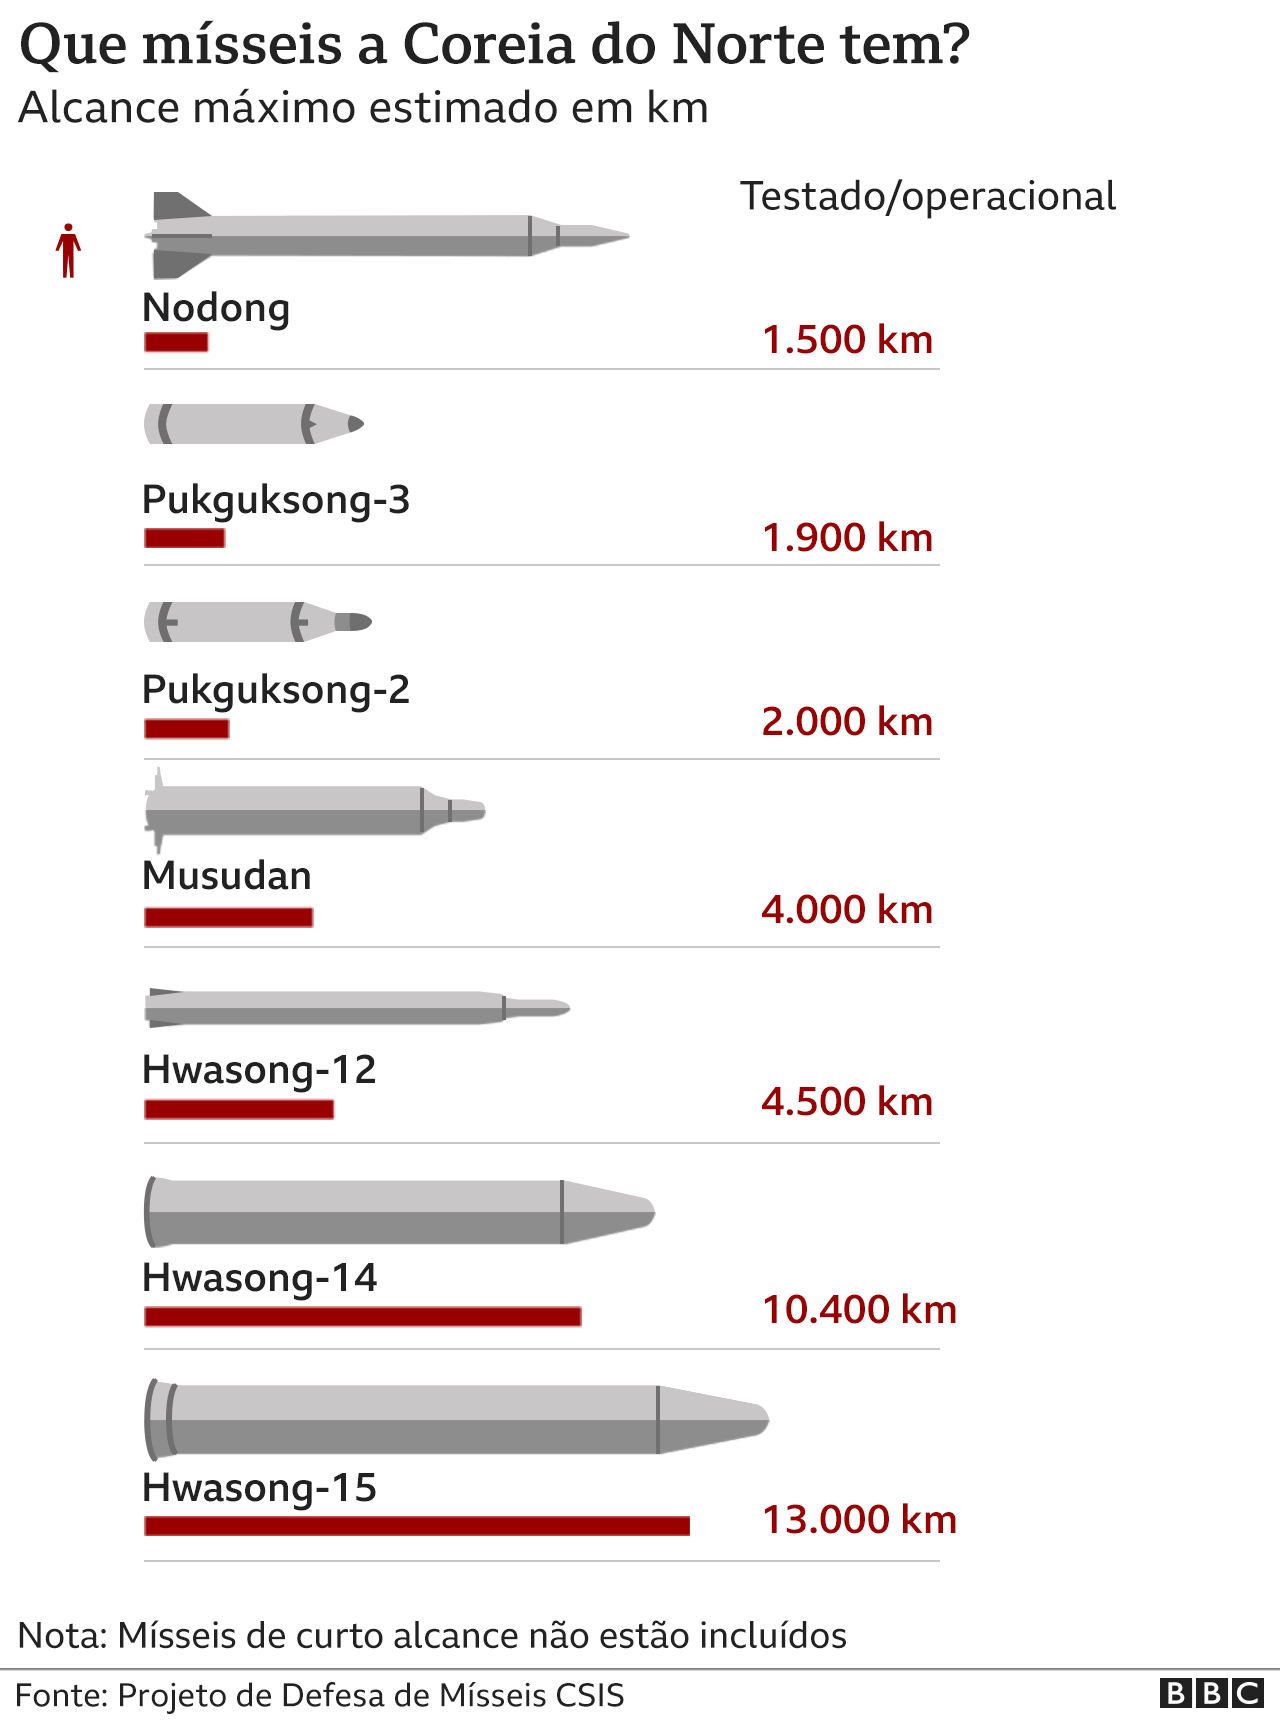 Infográfico faz comparação em relação ao alcance dos mísseis em poder da Coreia do Norte line (Foto: BBC News)